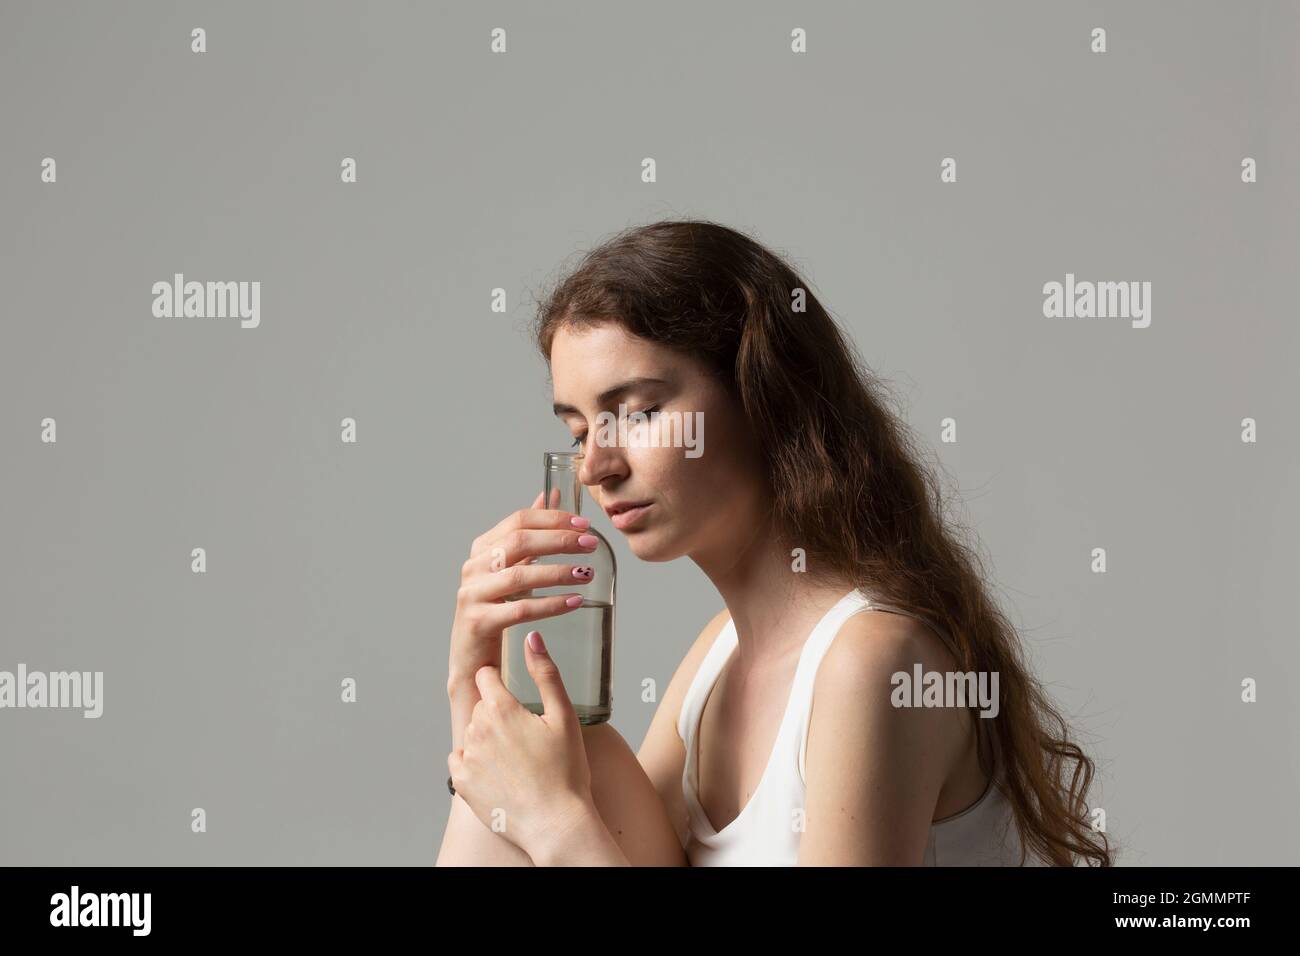 Sereine jeune femme tenant une bouteille d'eau Banque D'Images